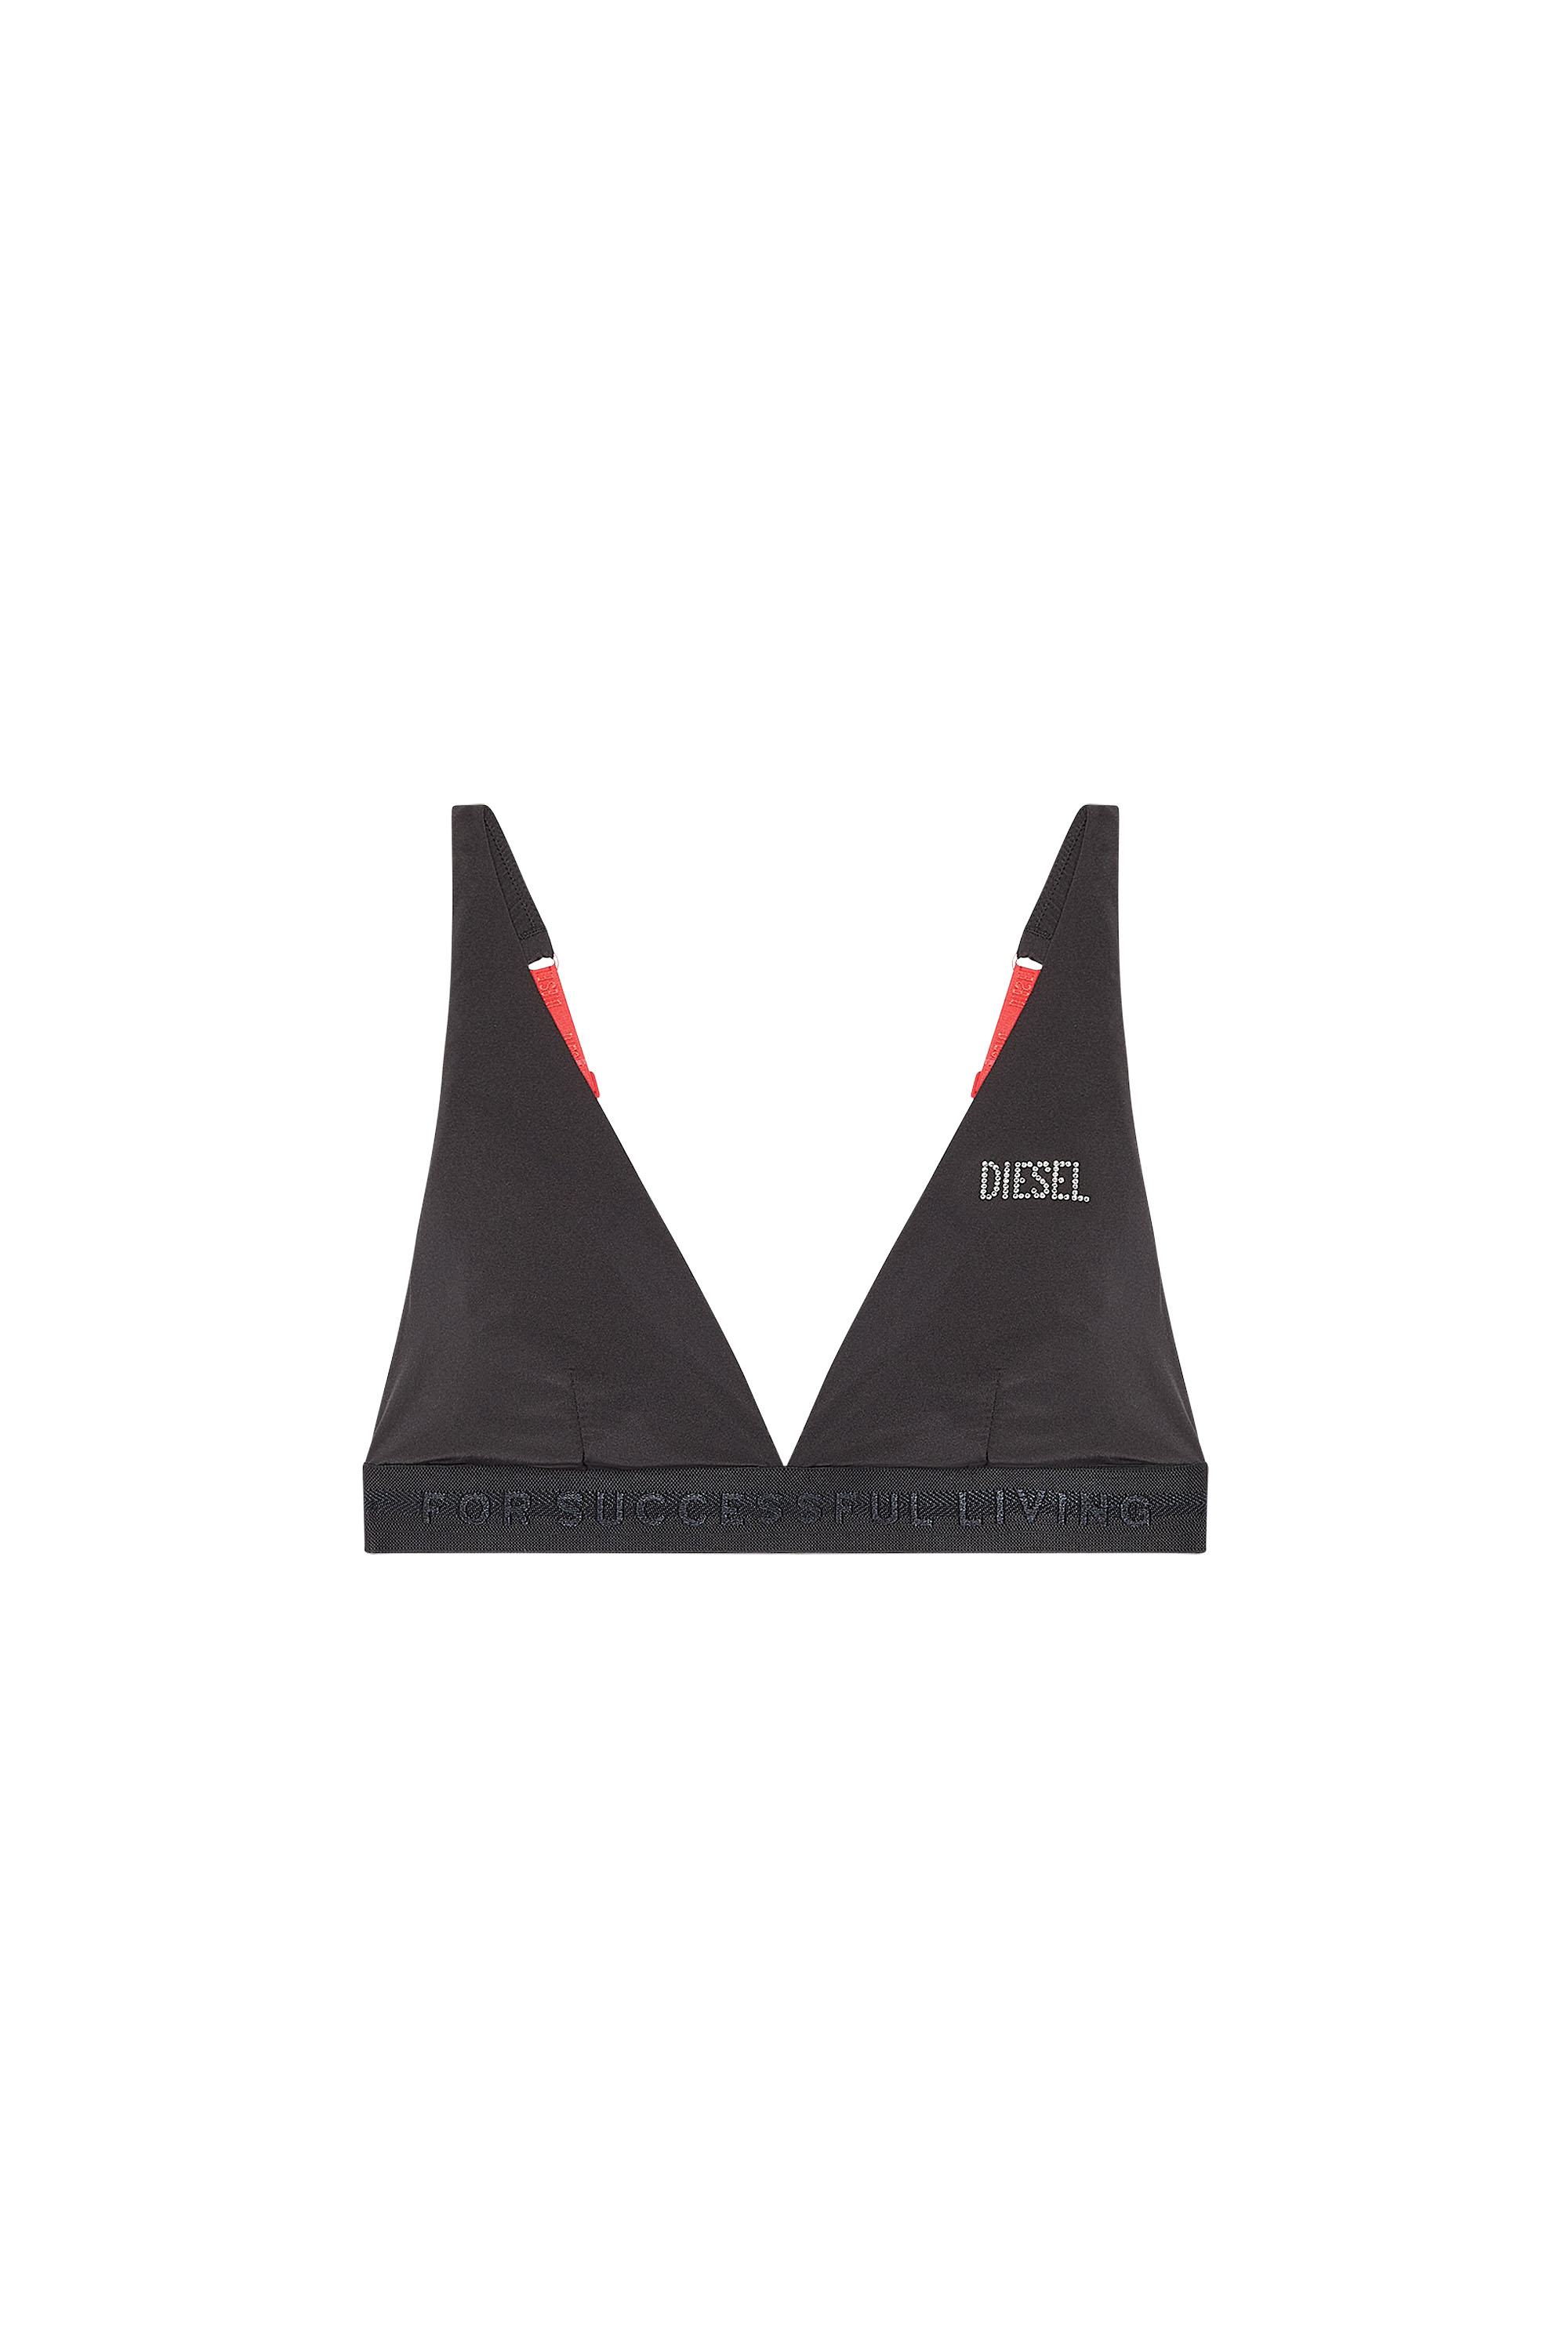 Diesel - Brassière triangle avec logo en strass - Soutiens-gorge - Femme - Noir